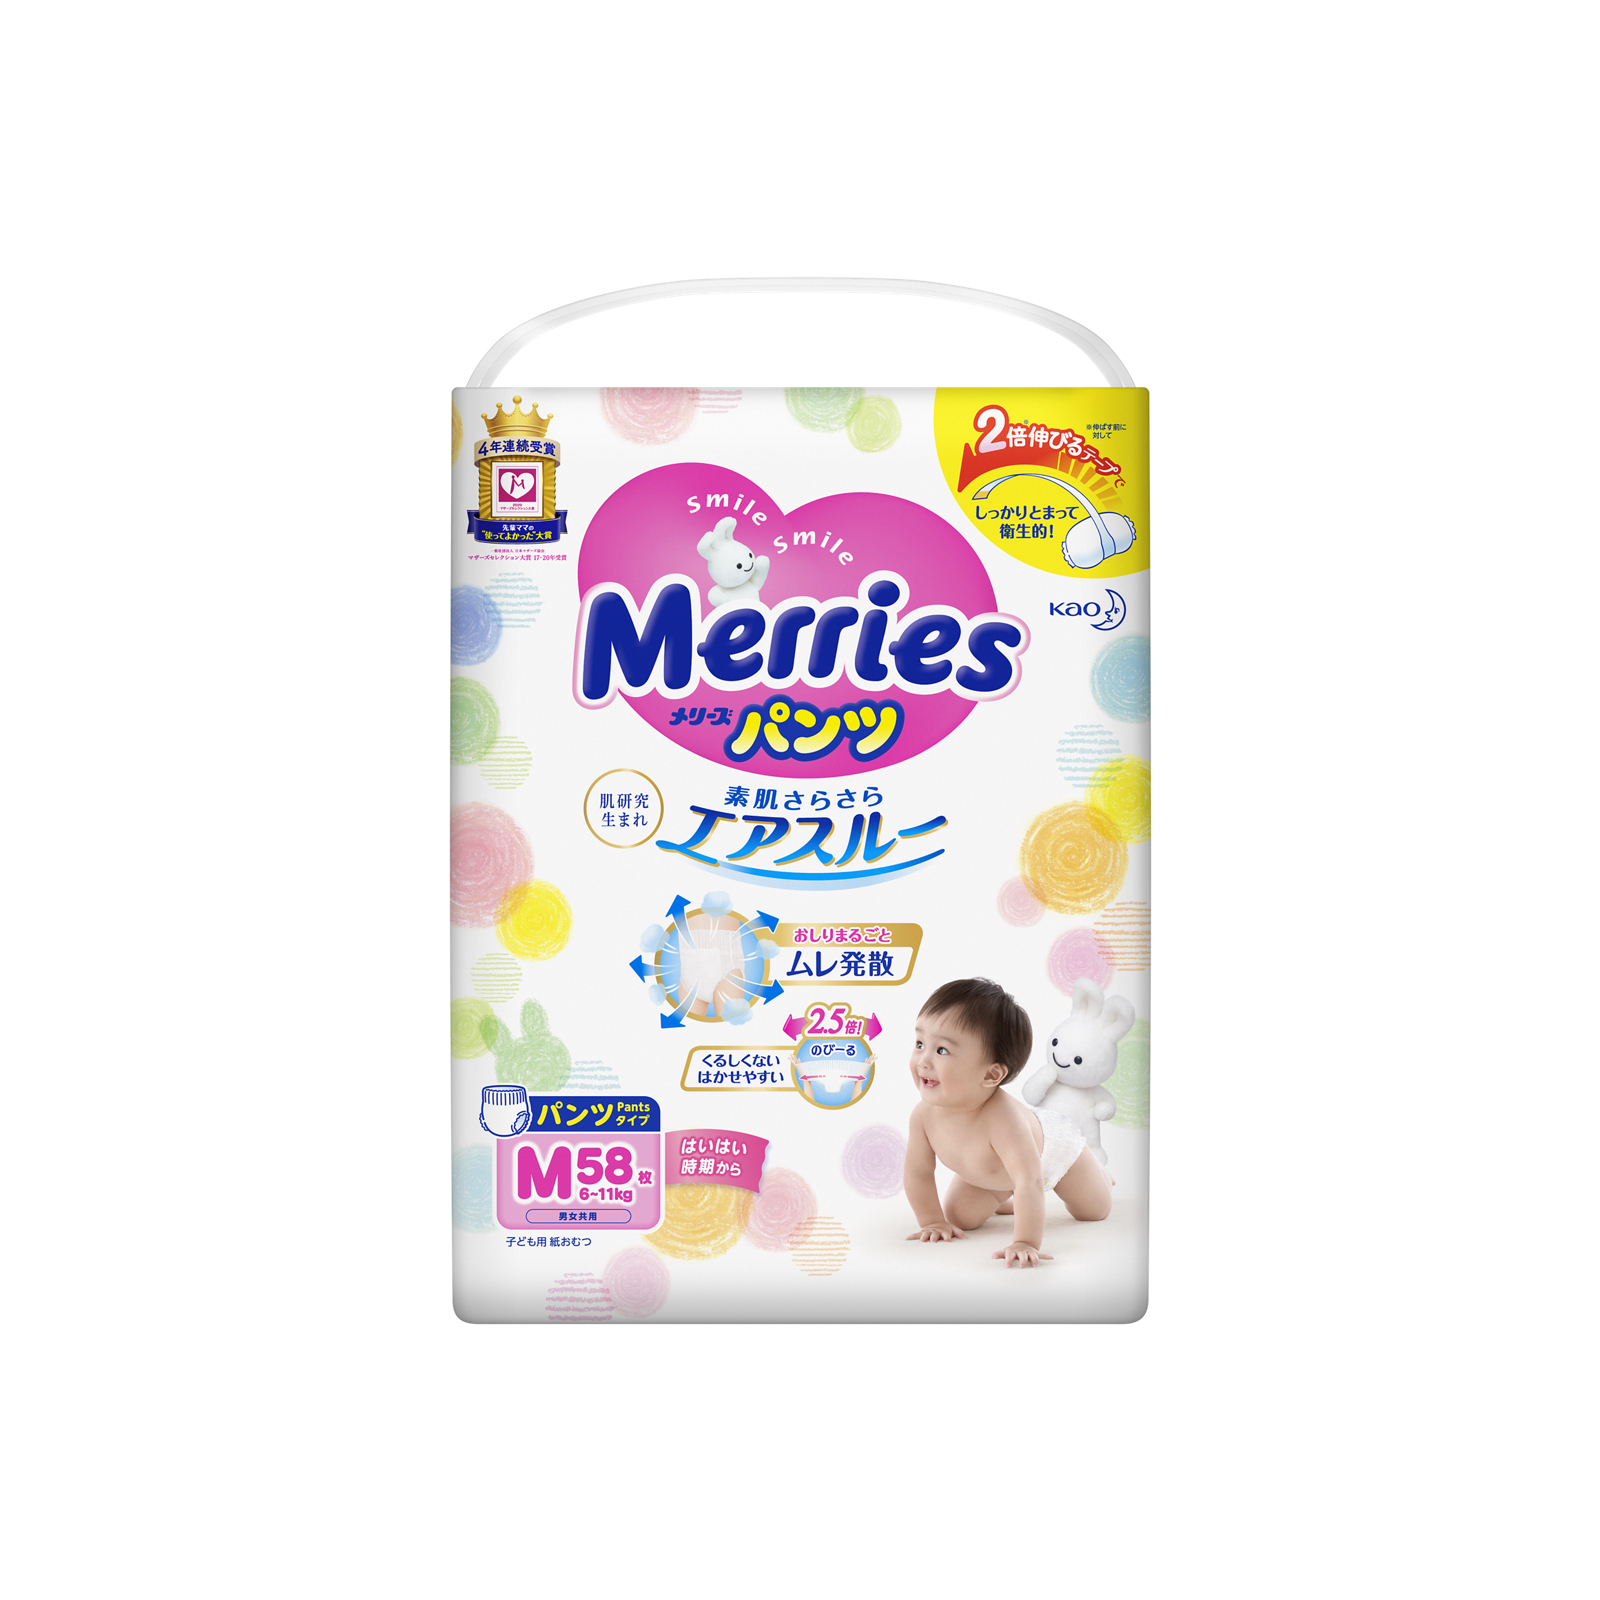 Підгузки Merries трусики для дітей розмір M 6-11 кг 58 шт (558641) зображення 2